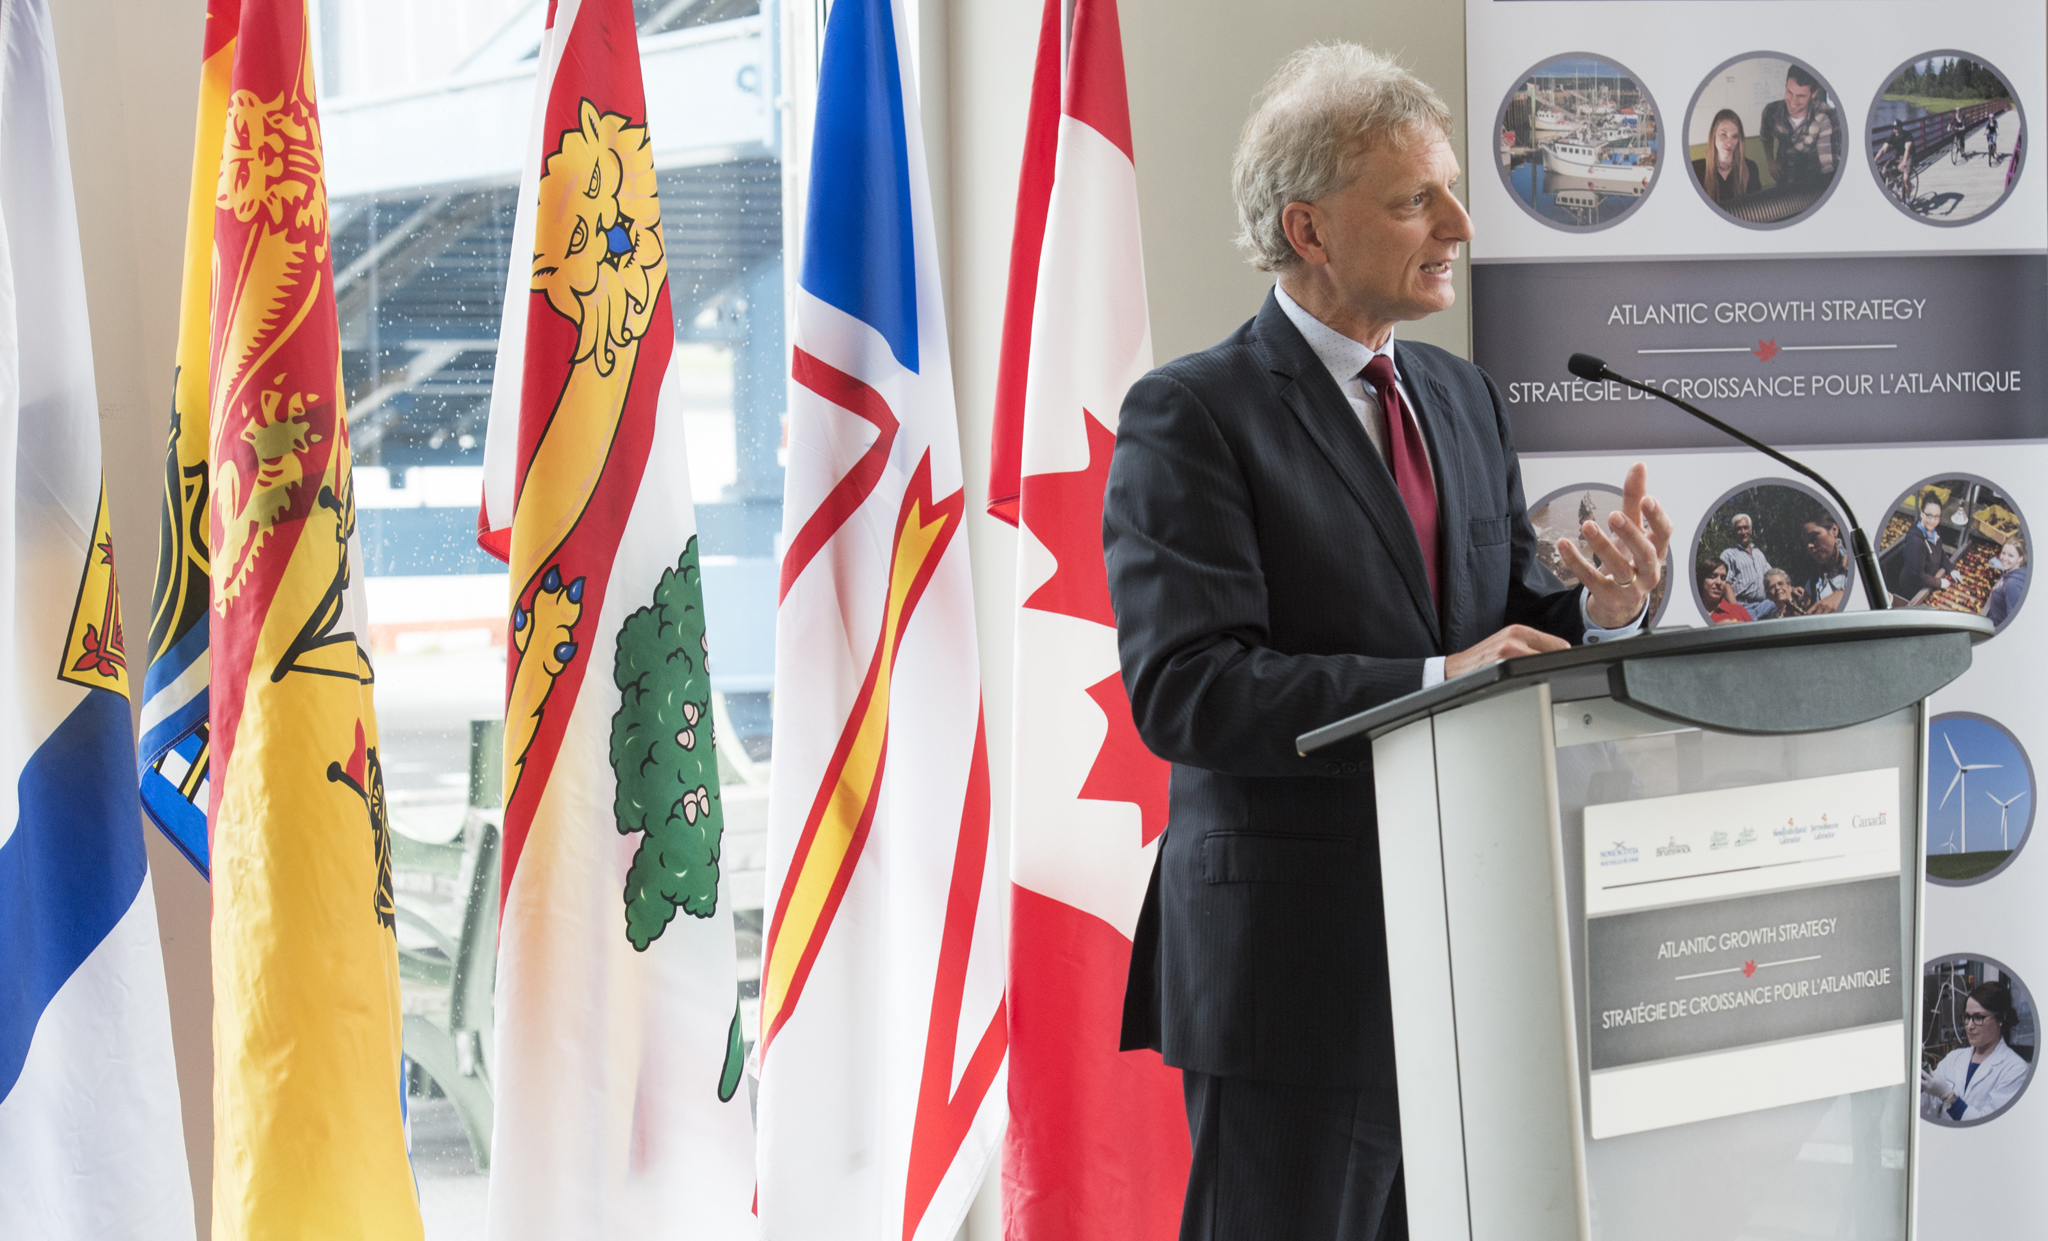 Le 4 juillet 2017 – L'honorable Roger Melanson, président du Conseil du Trésor et ministre responsable de la Politique d'expansion du commerce du Nouveau-Brunswick, discute de la façon dont les entreprises tireront profit de la nouvelle Stratégie de croissance du commerce et des investissements en Atlantique.